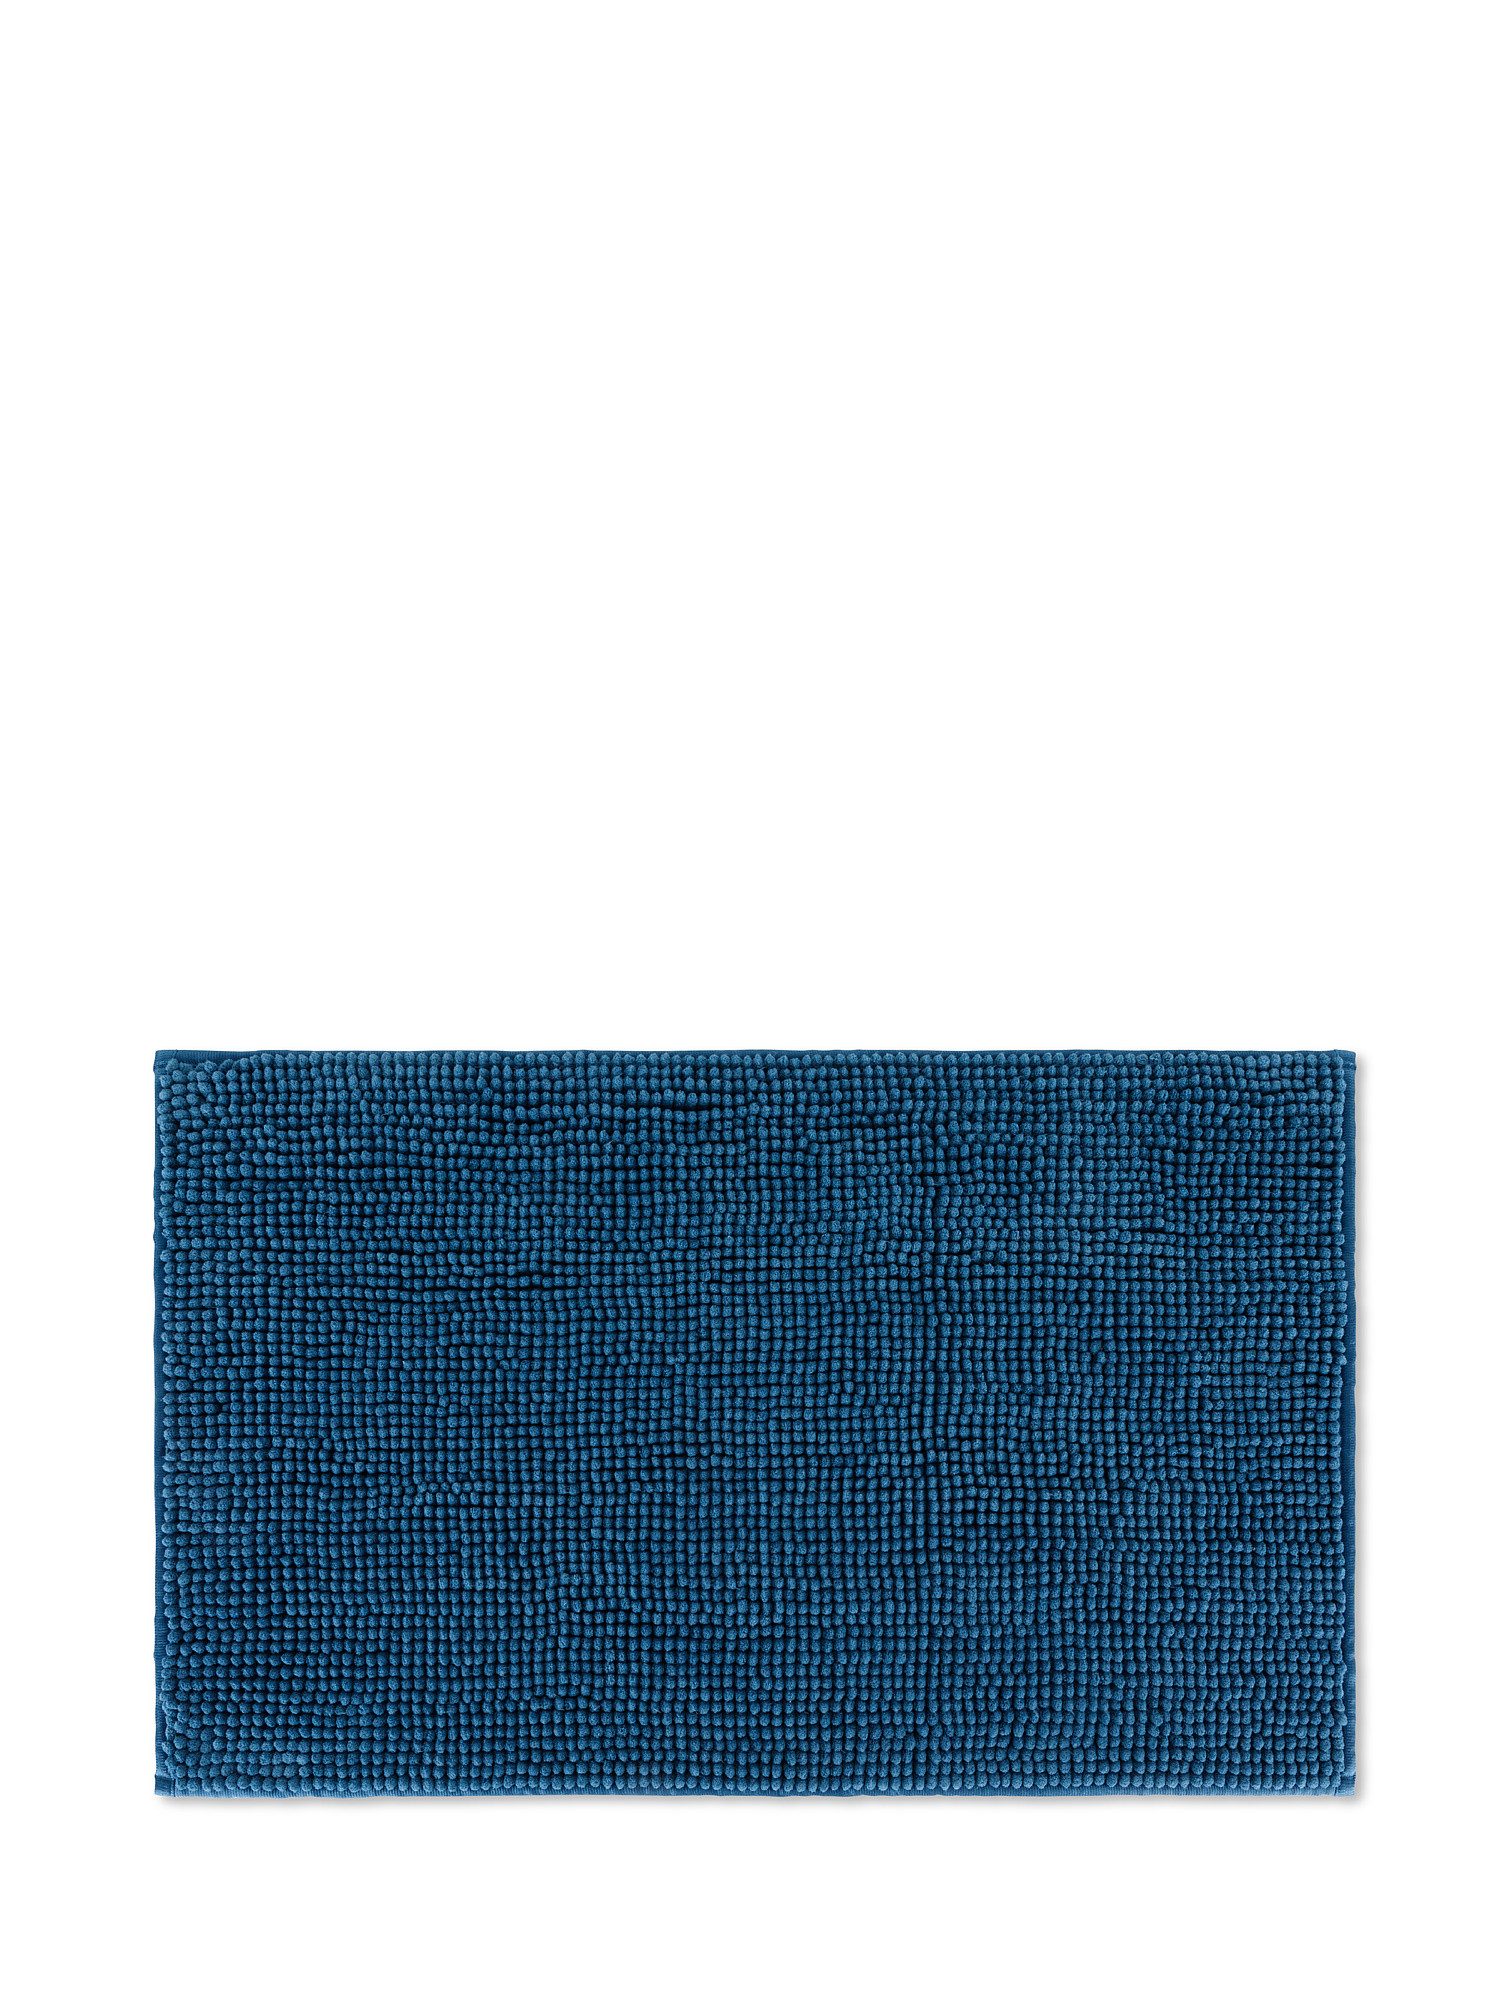 Tappeto bagno stile shaggy, Blu, large image number 0